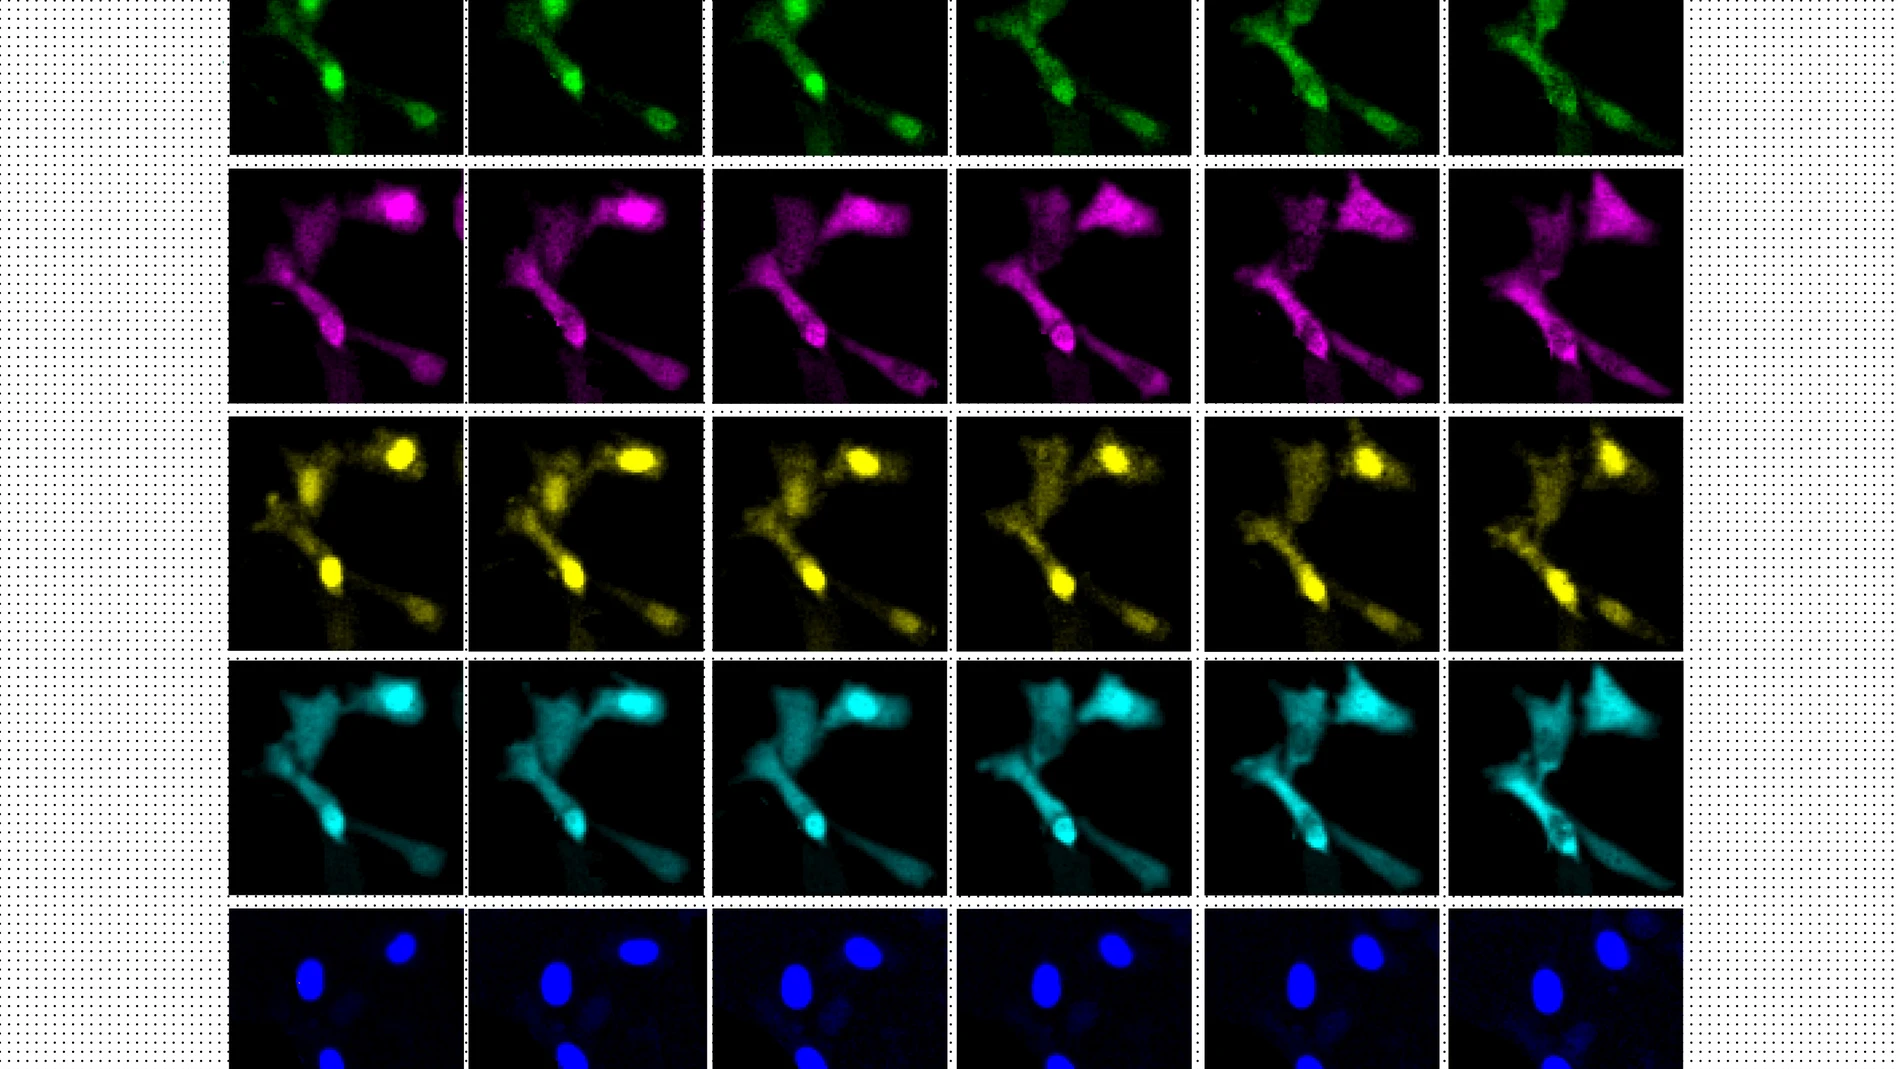 Secuencia de imágenes mostrando células en división 